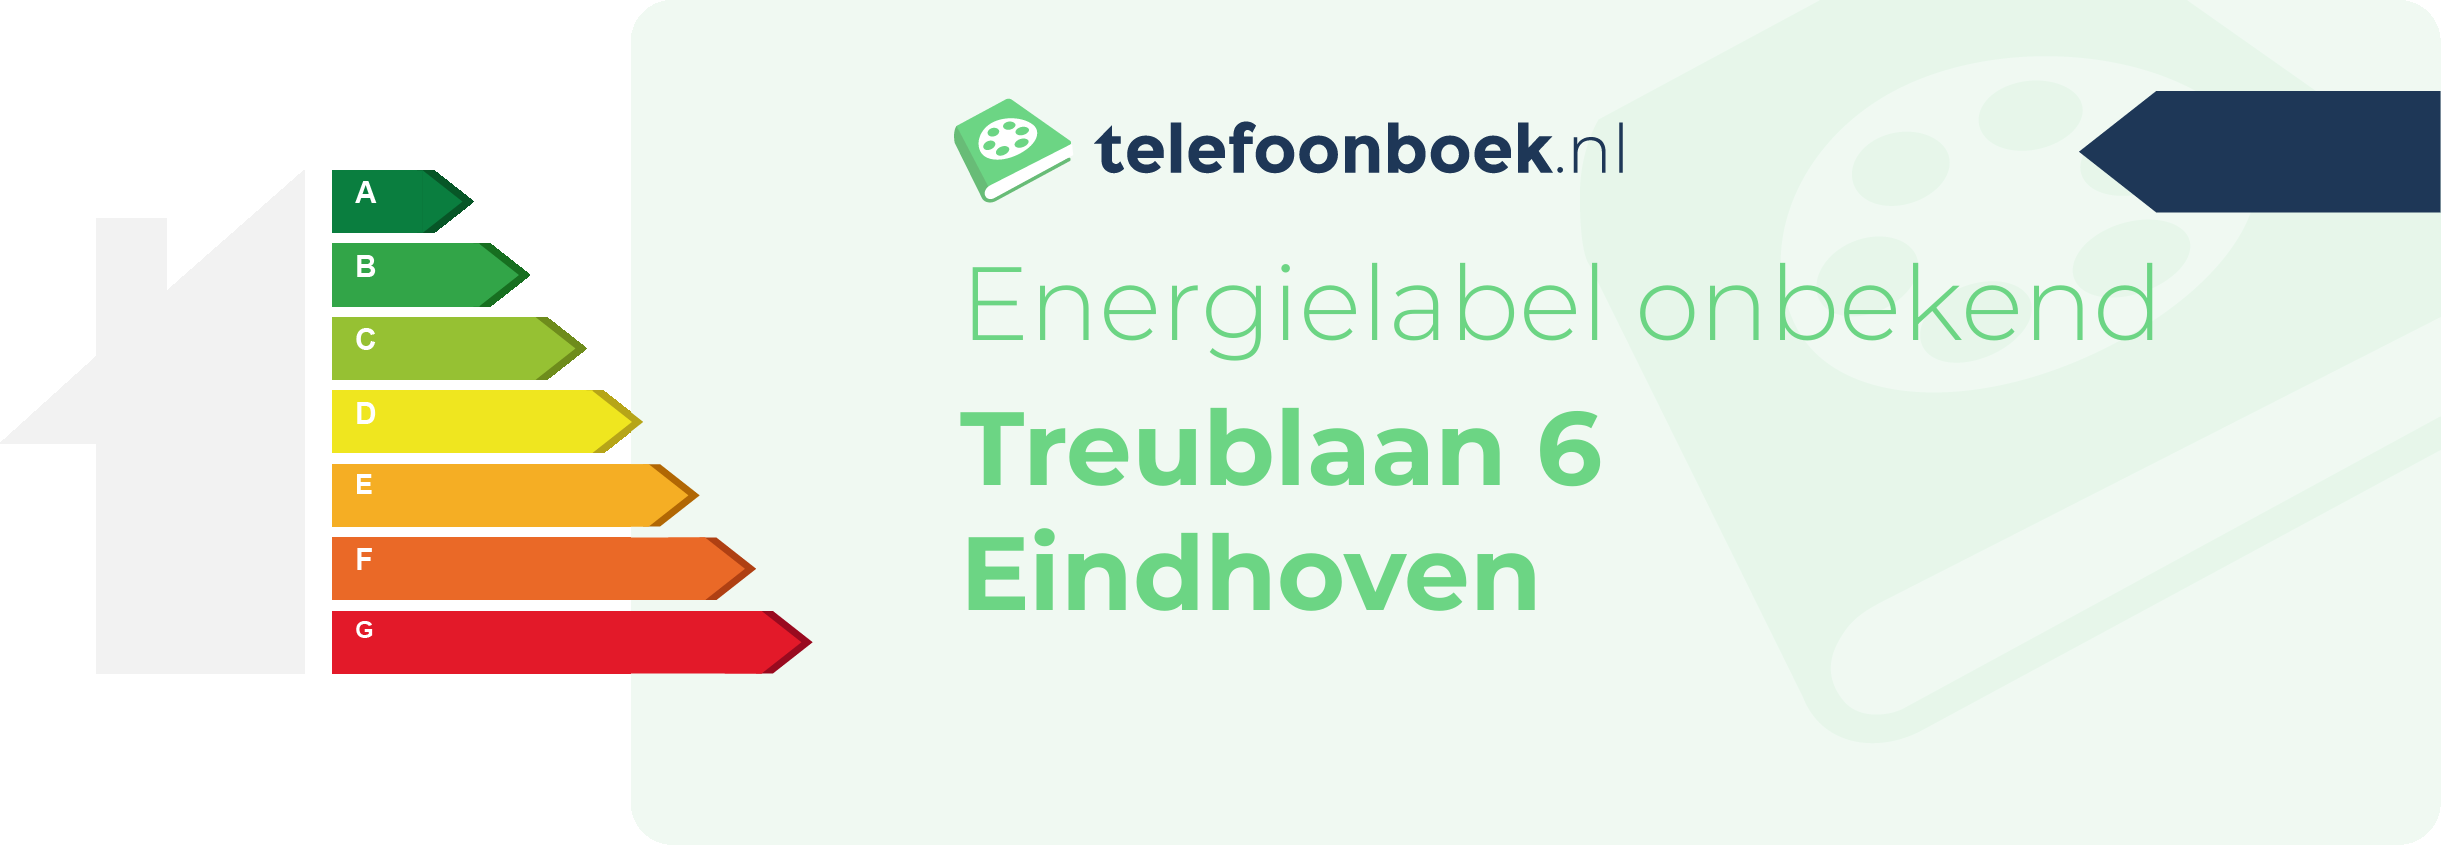 Energielabel Treublaan 6 Eindhoven